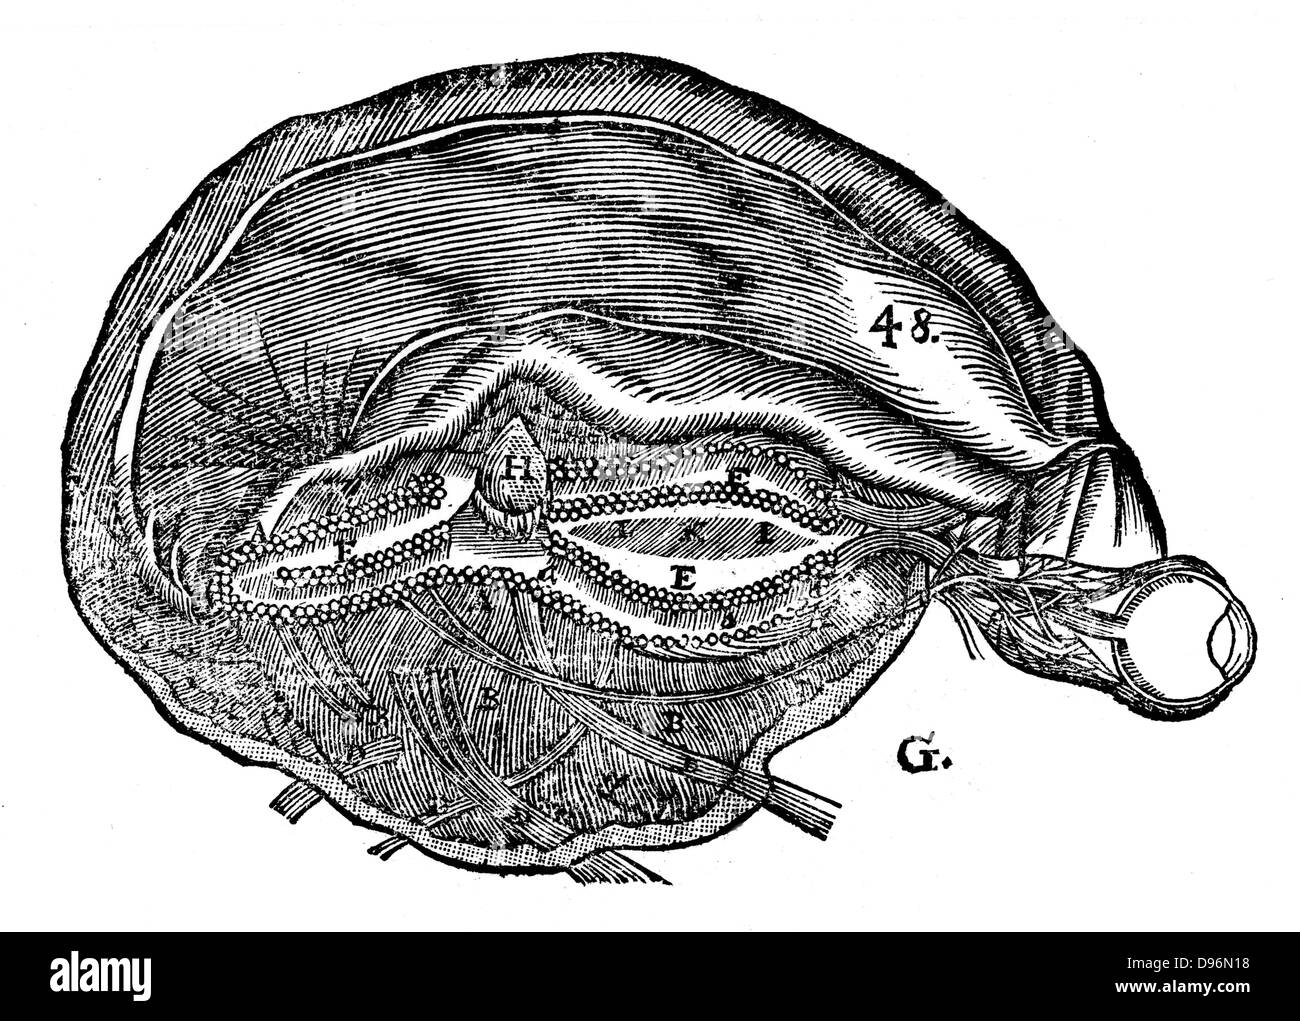 Descartes " schema del cervello umano e l'occhio. Dal Rene Descartes 'Opera Philiosophica', con sede in Francoforte sul Meno, 1692. Xilografia Foto Stock